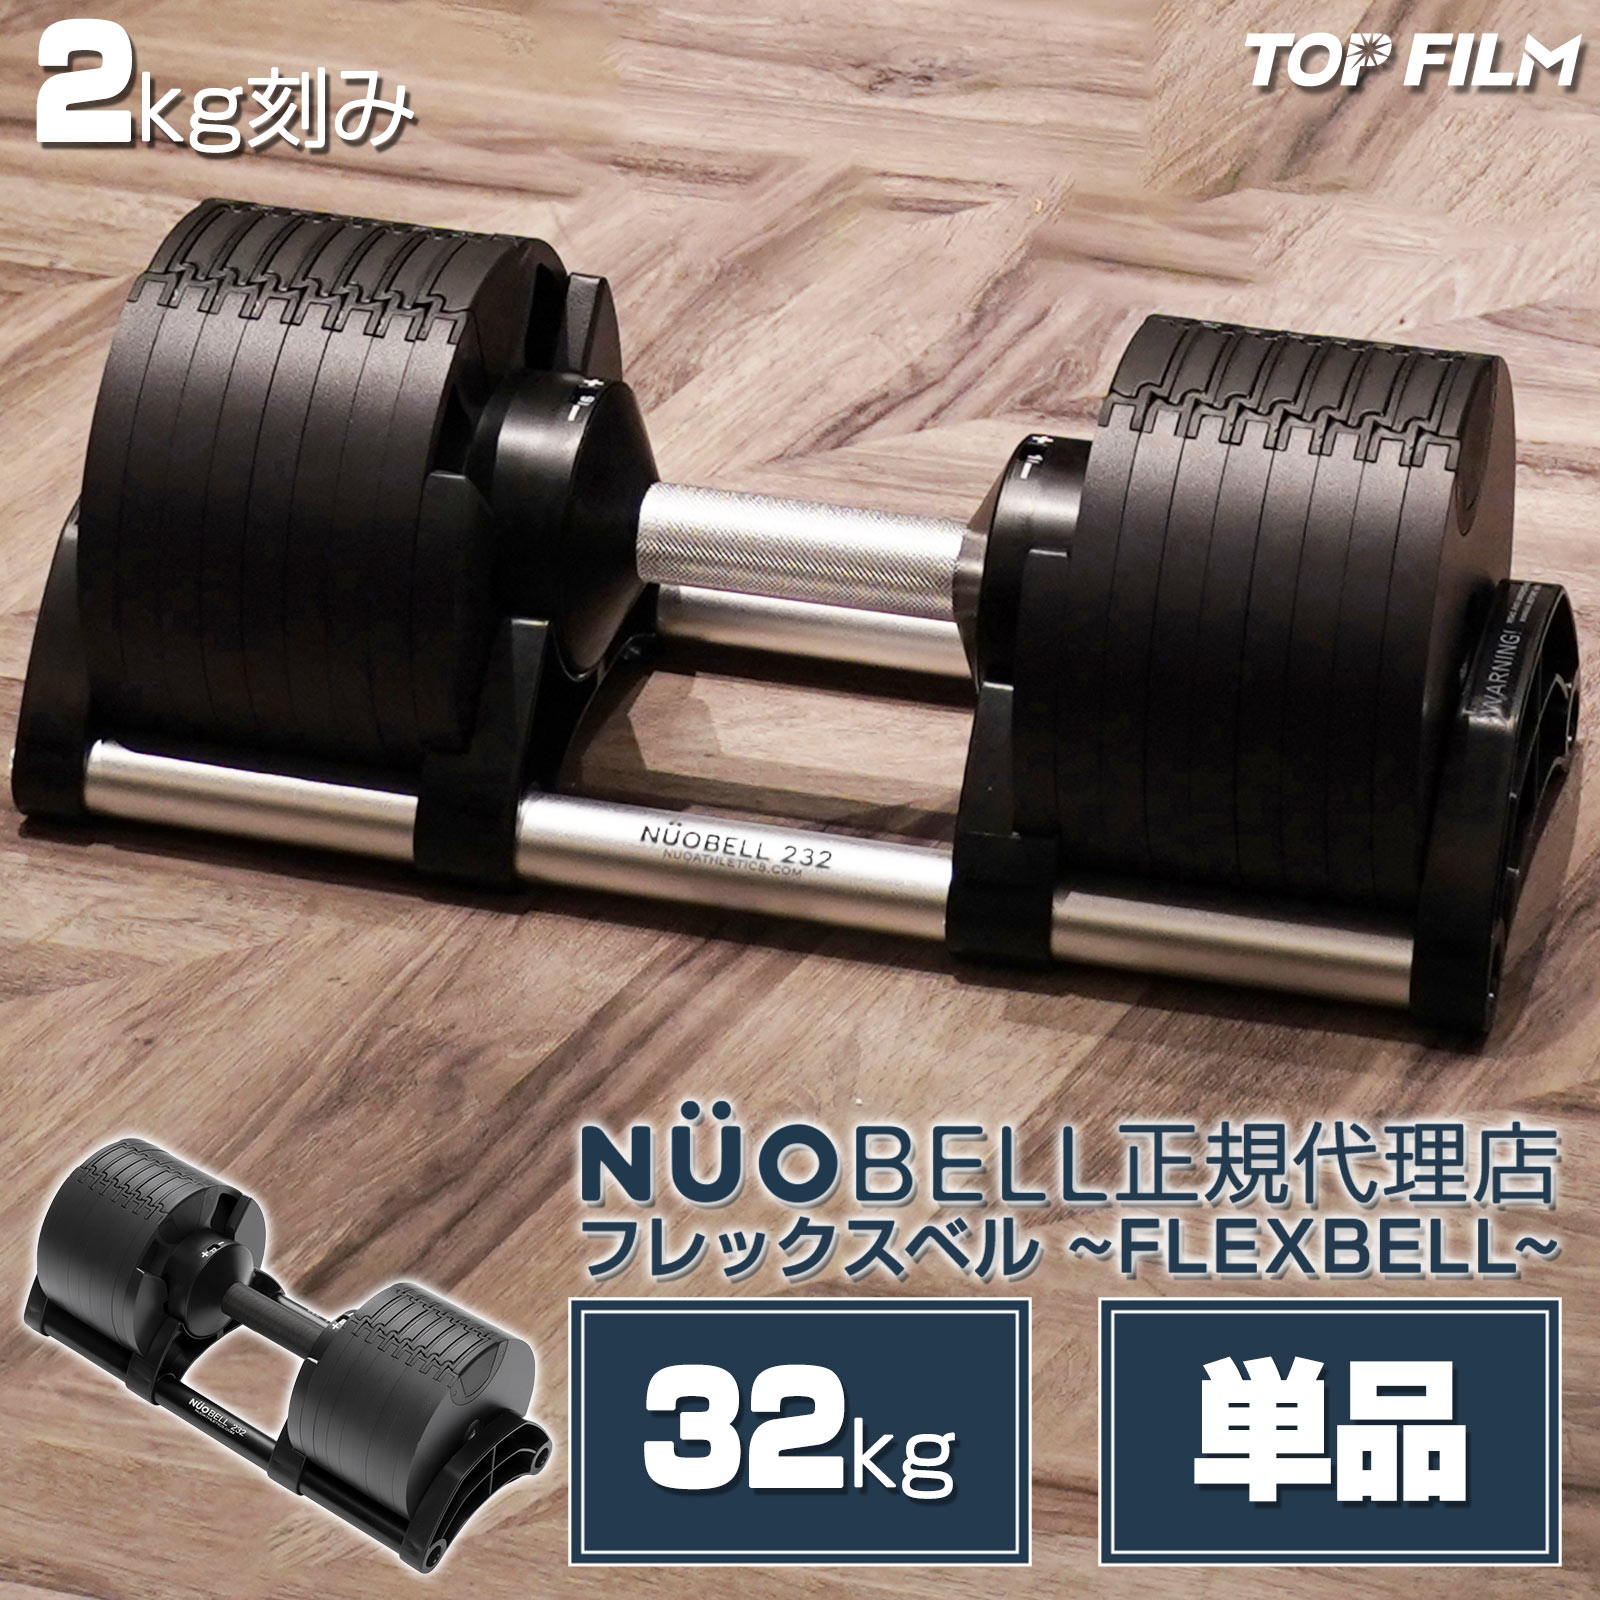 ダンベル 可変式ダンベル フレックスベル 32kg 2kg刻み NUO正規品 